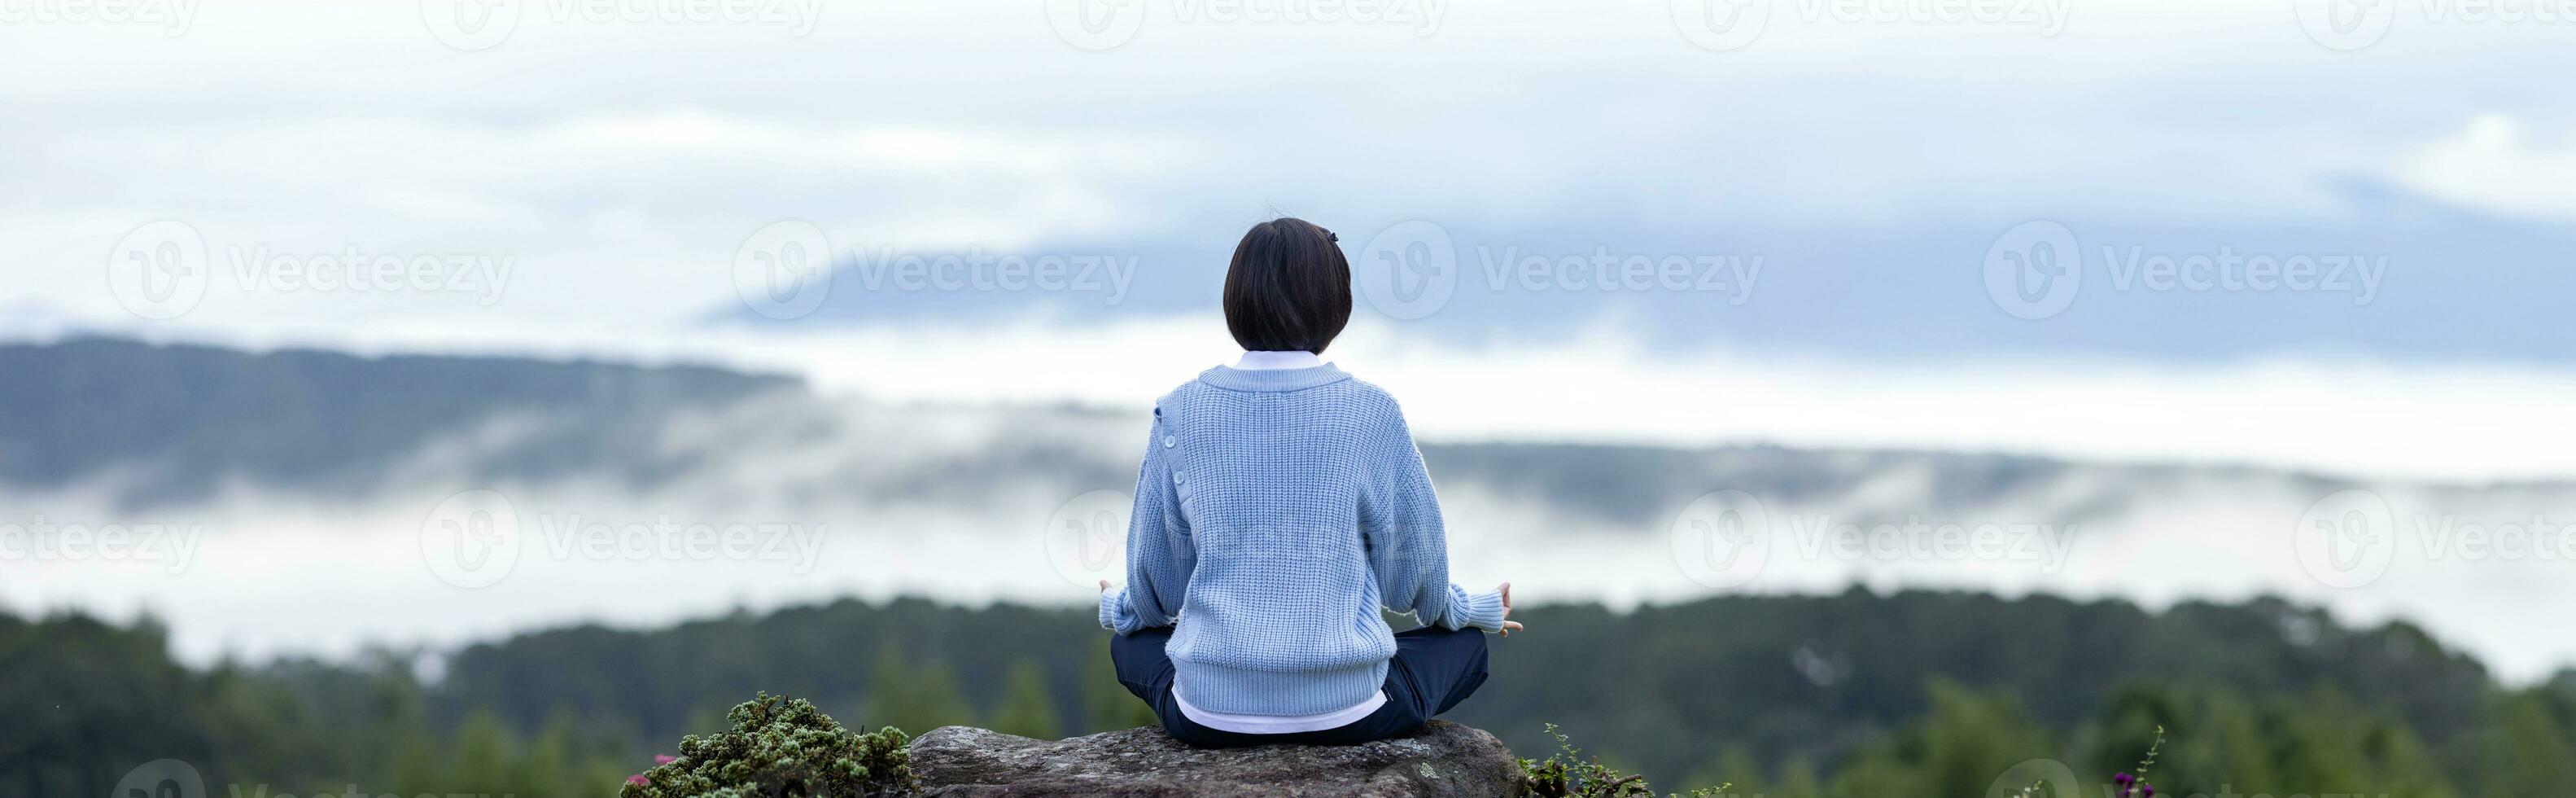 panorama tillbaka se av kvinna i luvtröja är avkopplande praktiserande meditation yoga på de topp av berg med dimma och dimma i sommar till uppnå lycka från inre fred visdom för friska sinne och själ foto